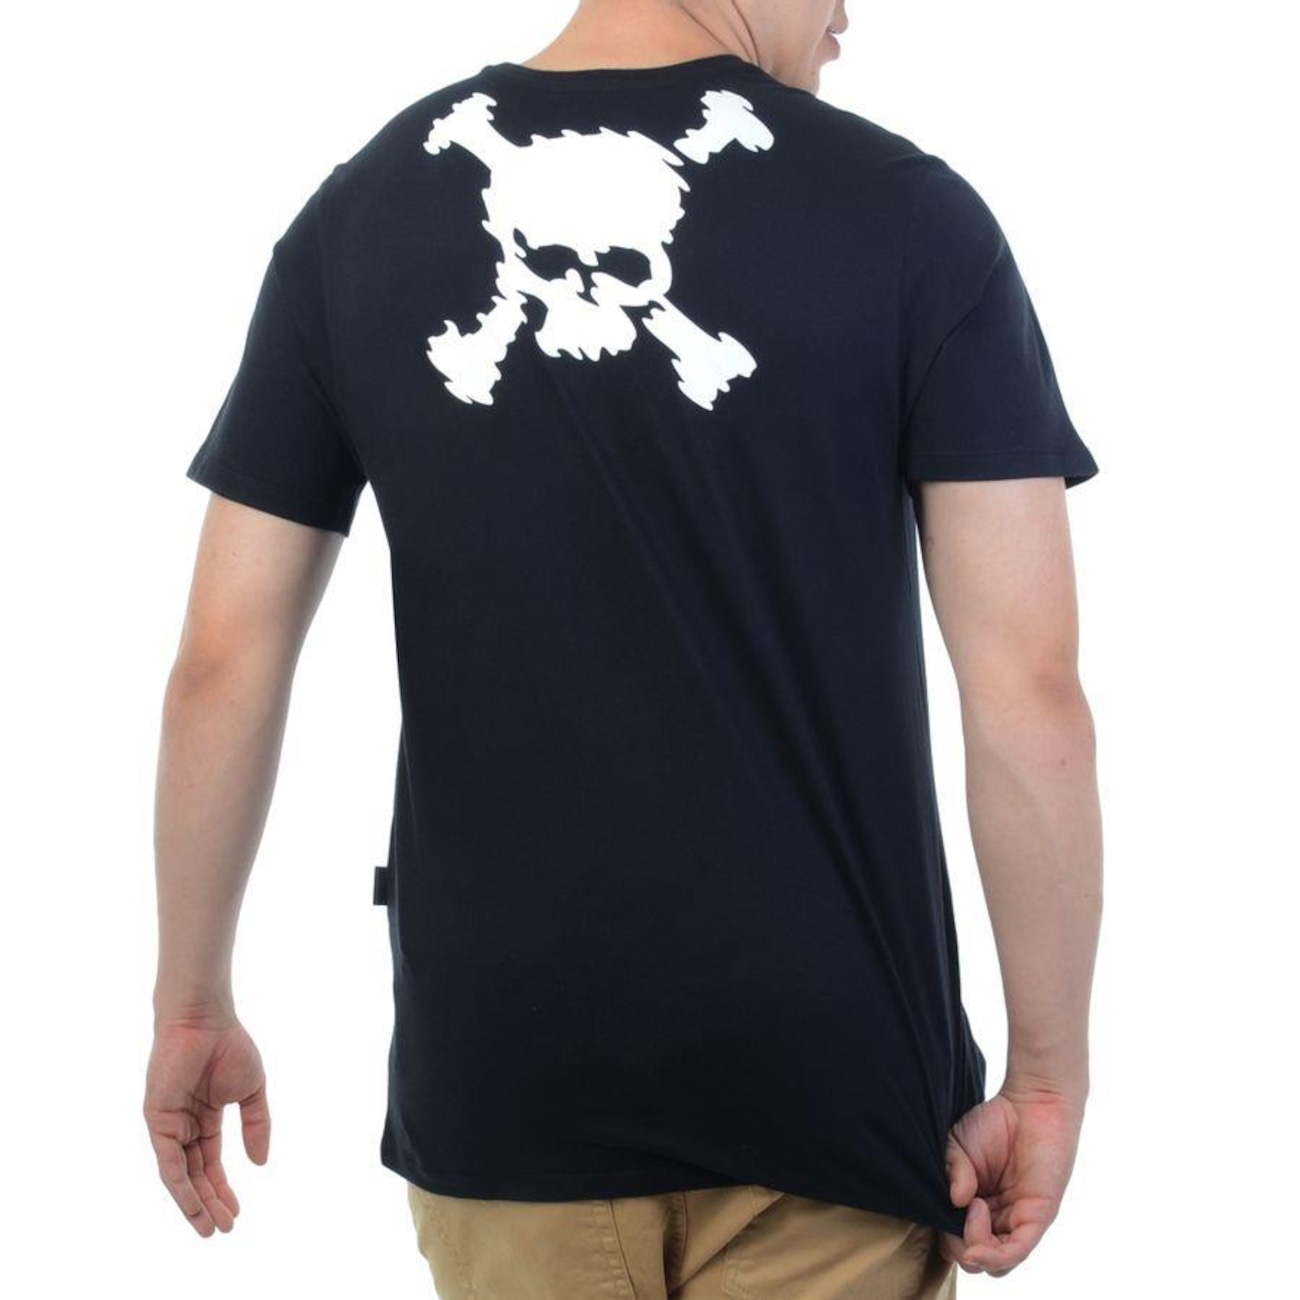 Camiseta Oakley Big Skull Masculina - Marrom Claro